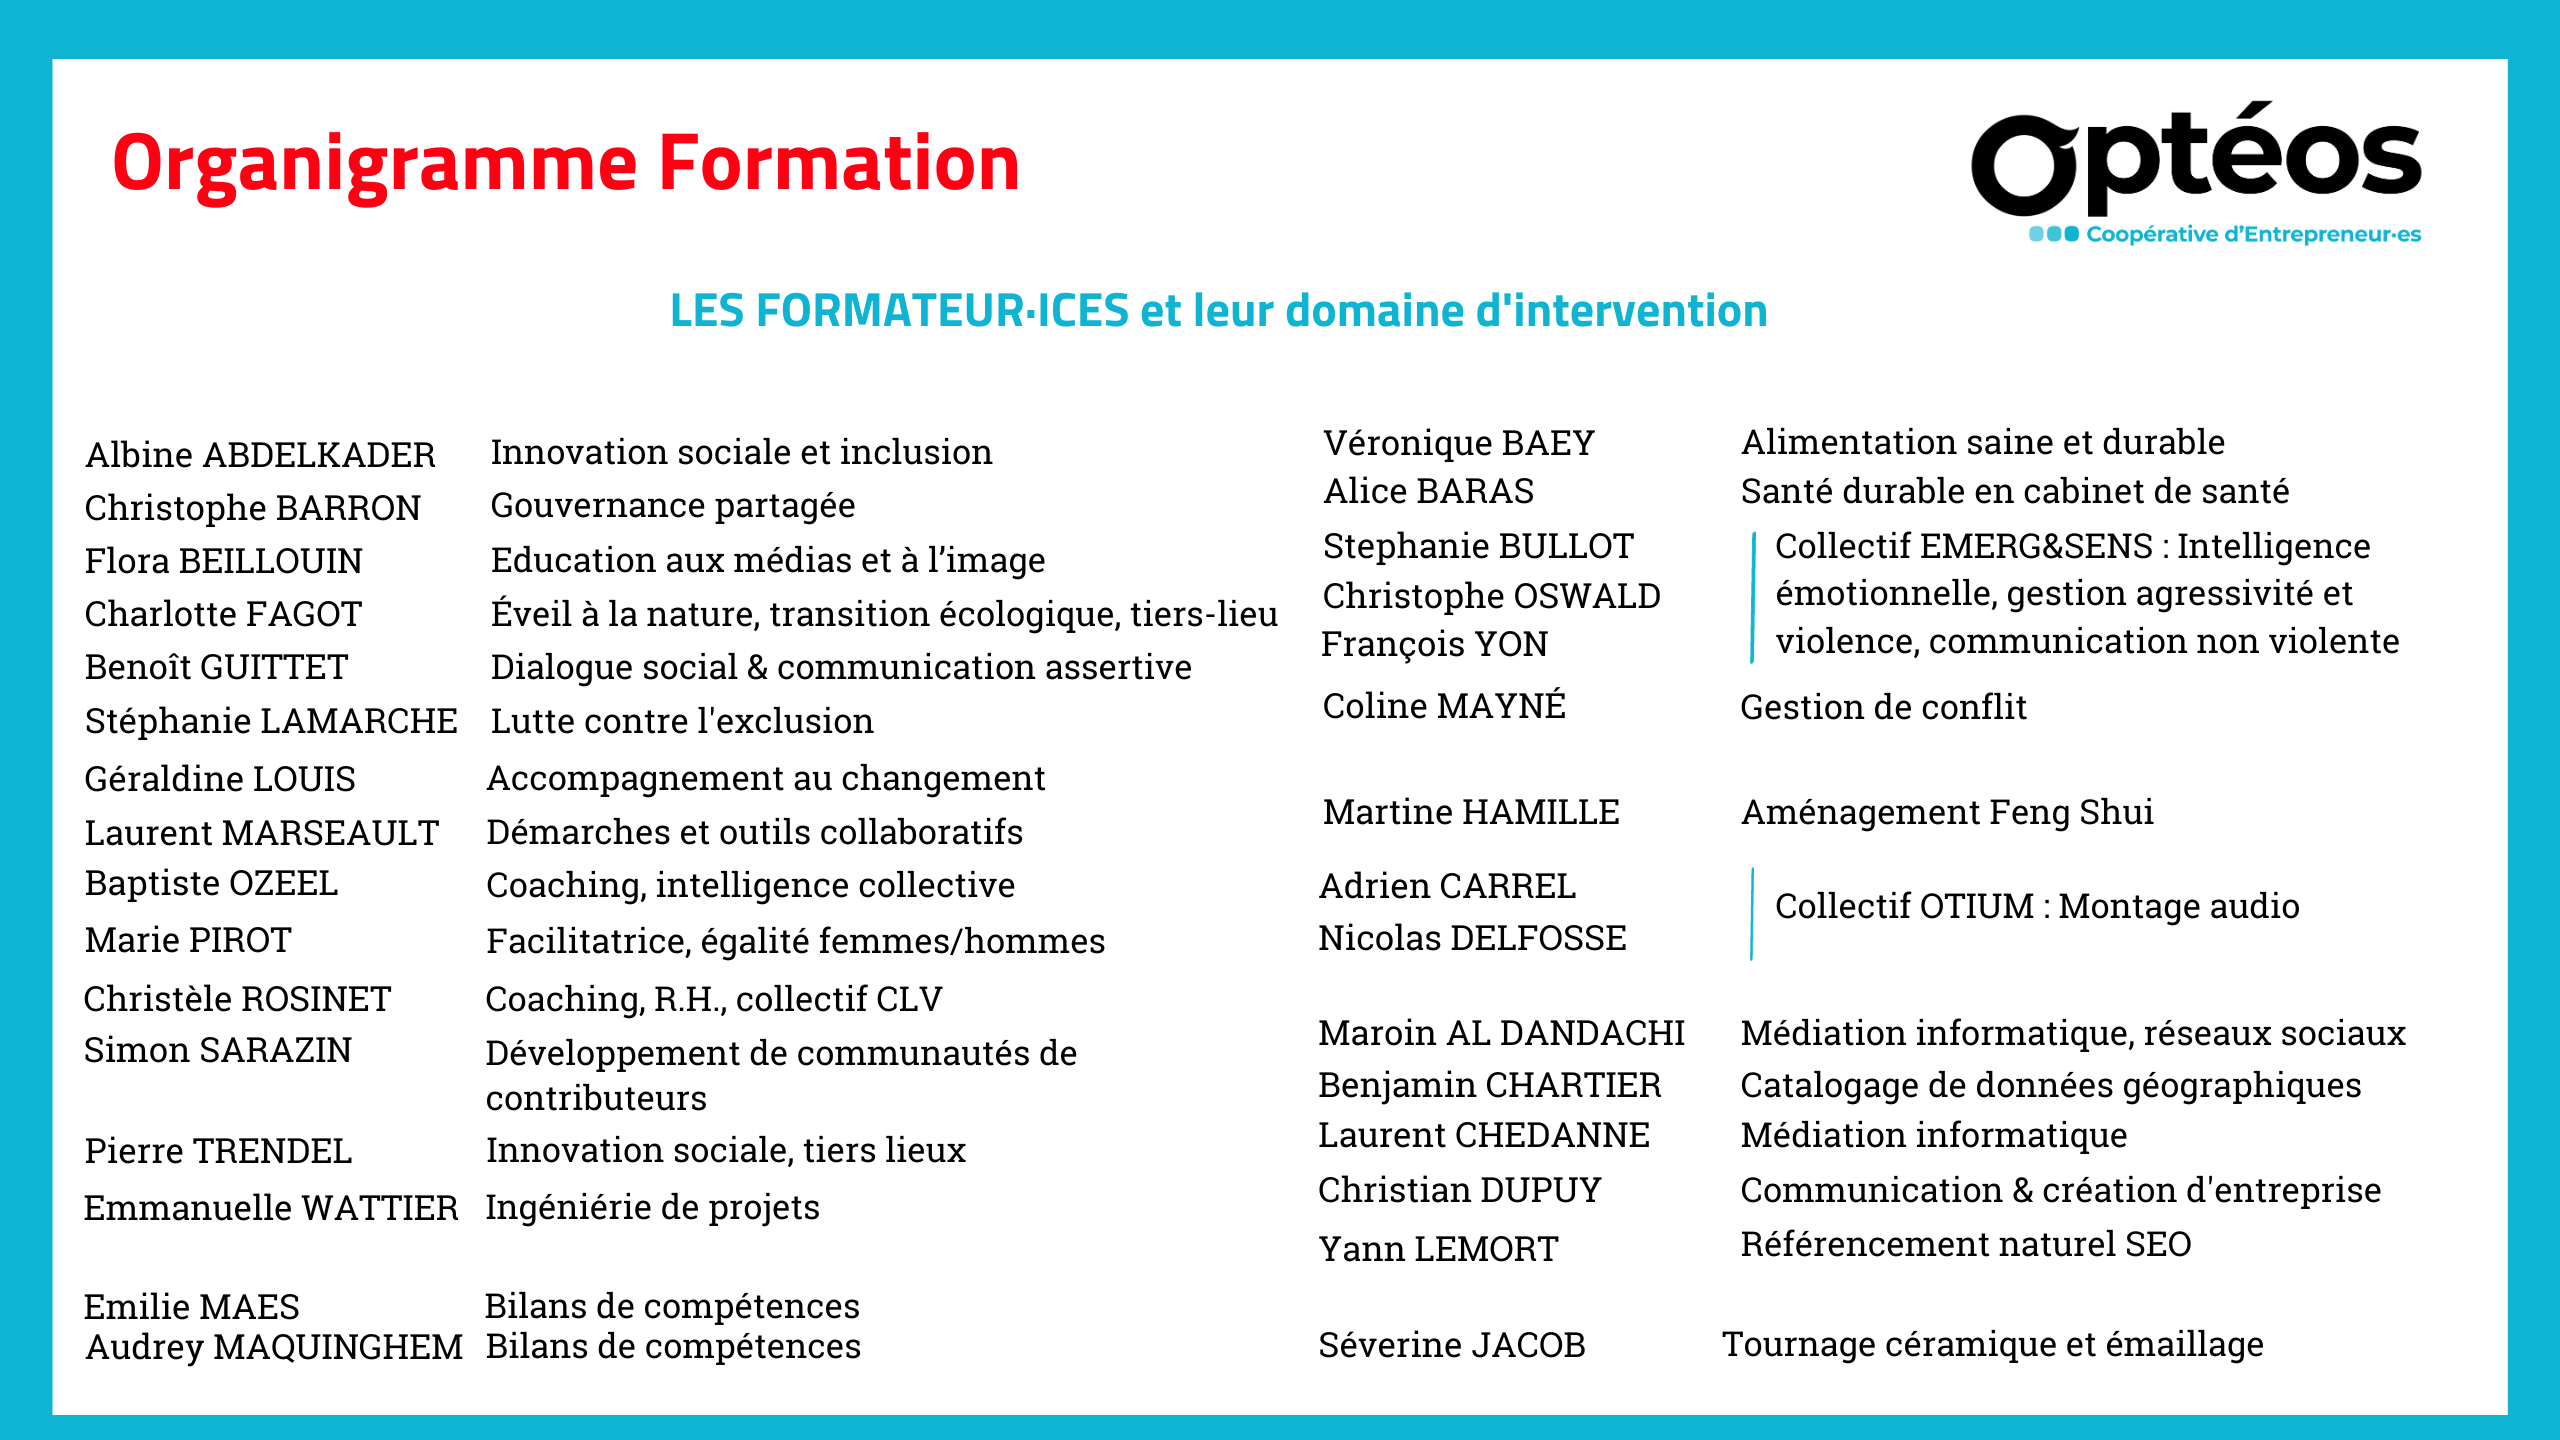 Les formateur·ices et leur domaine d'intervention, organigramme Formation, Optéos